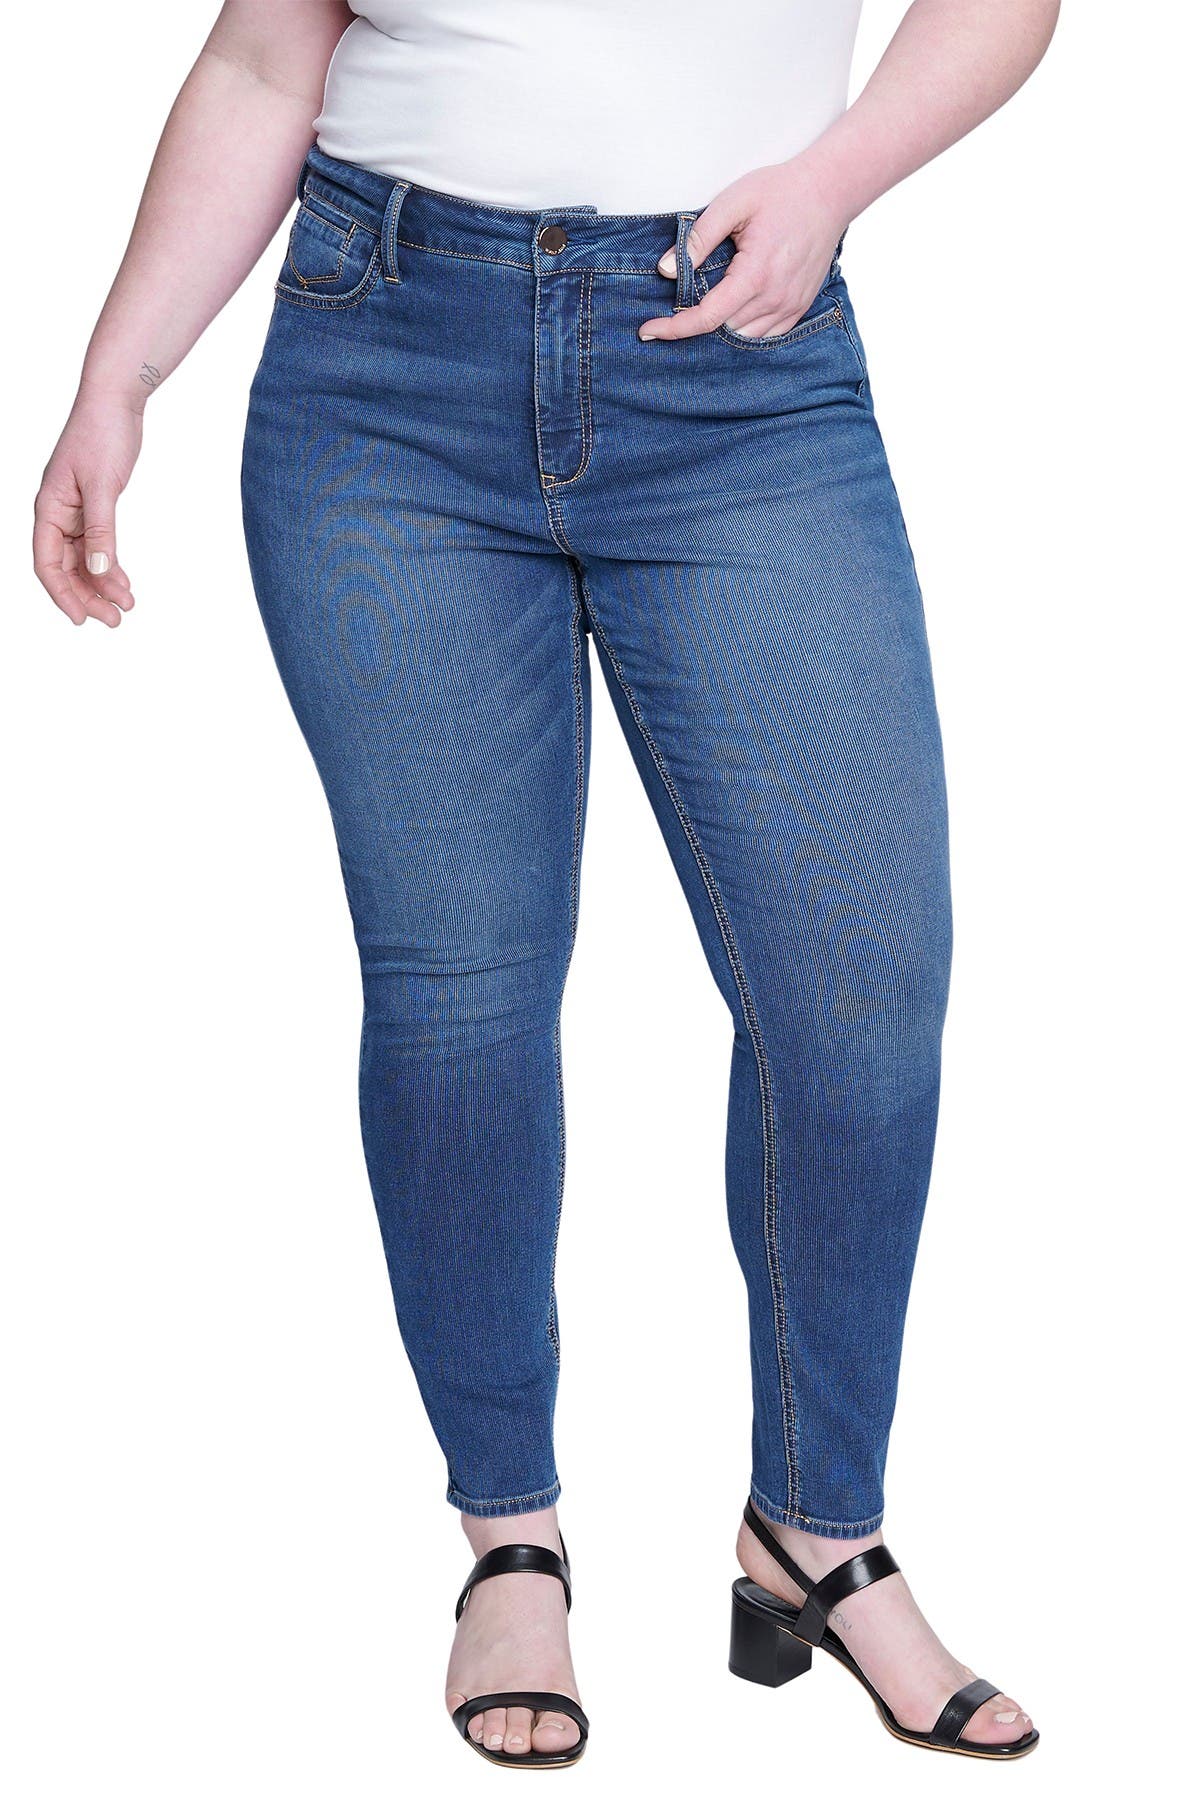 nordstrom seven jeans